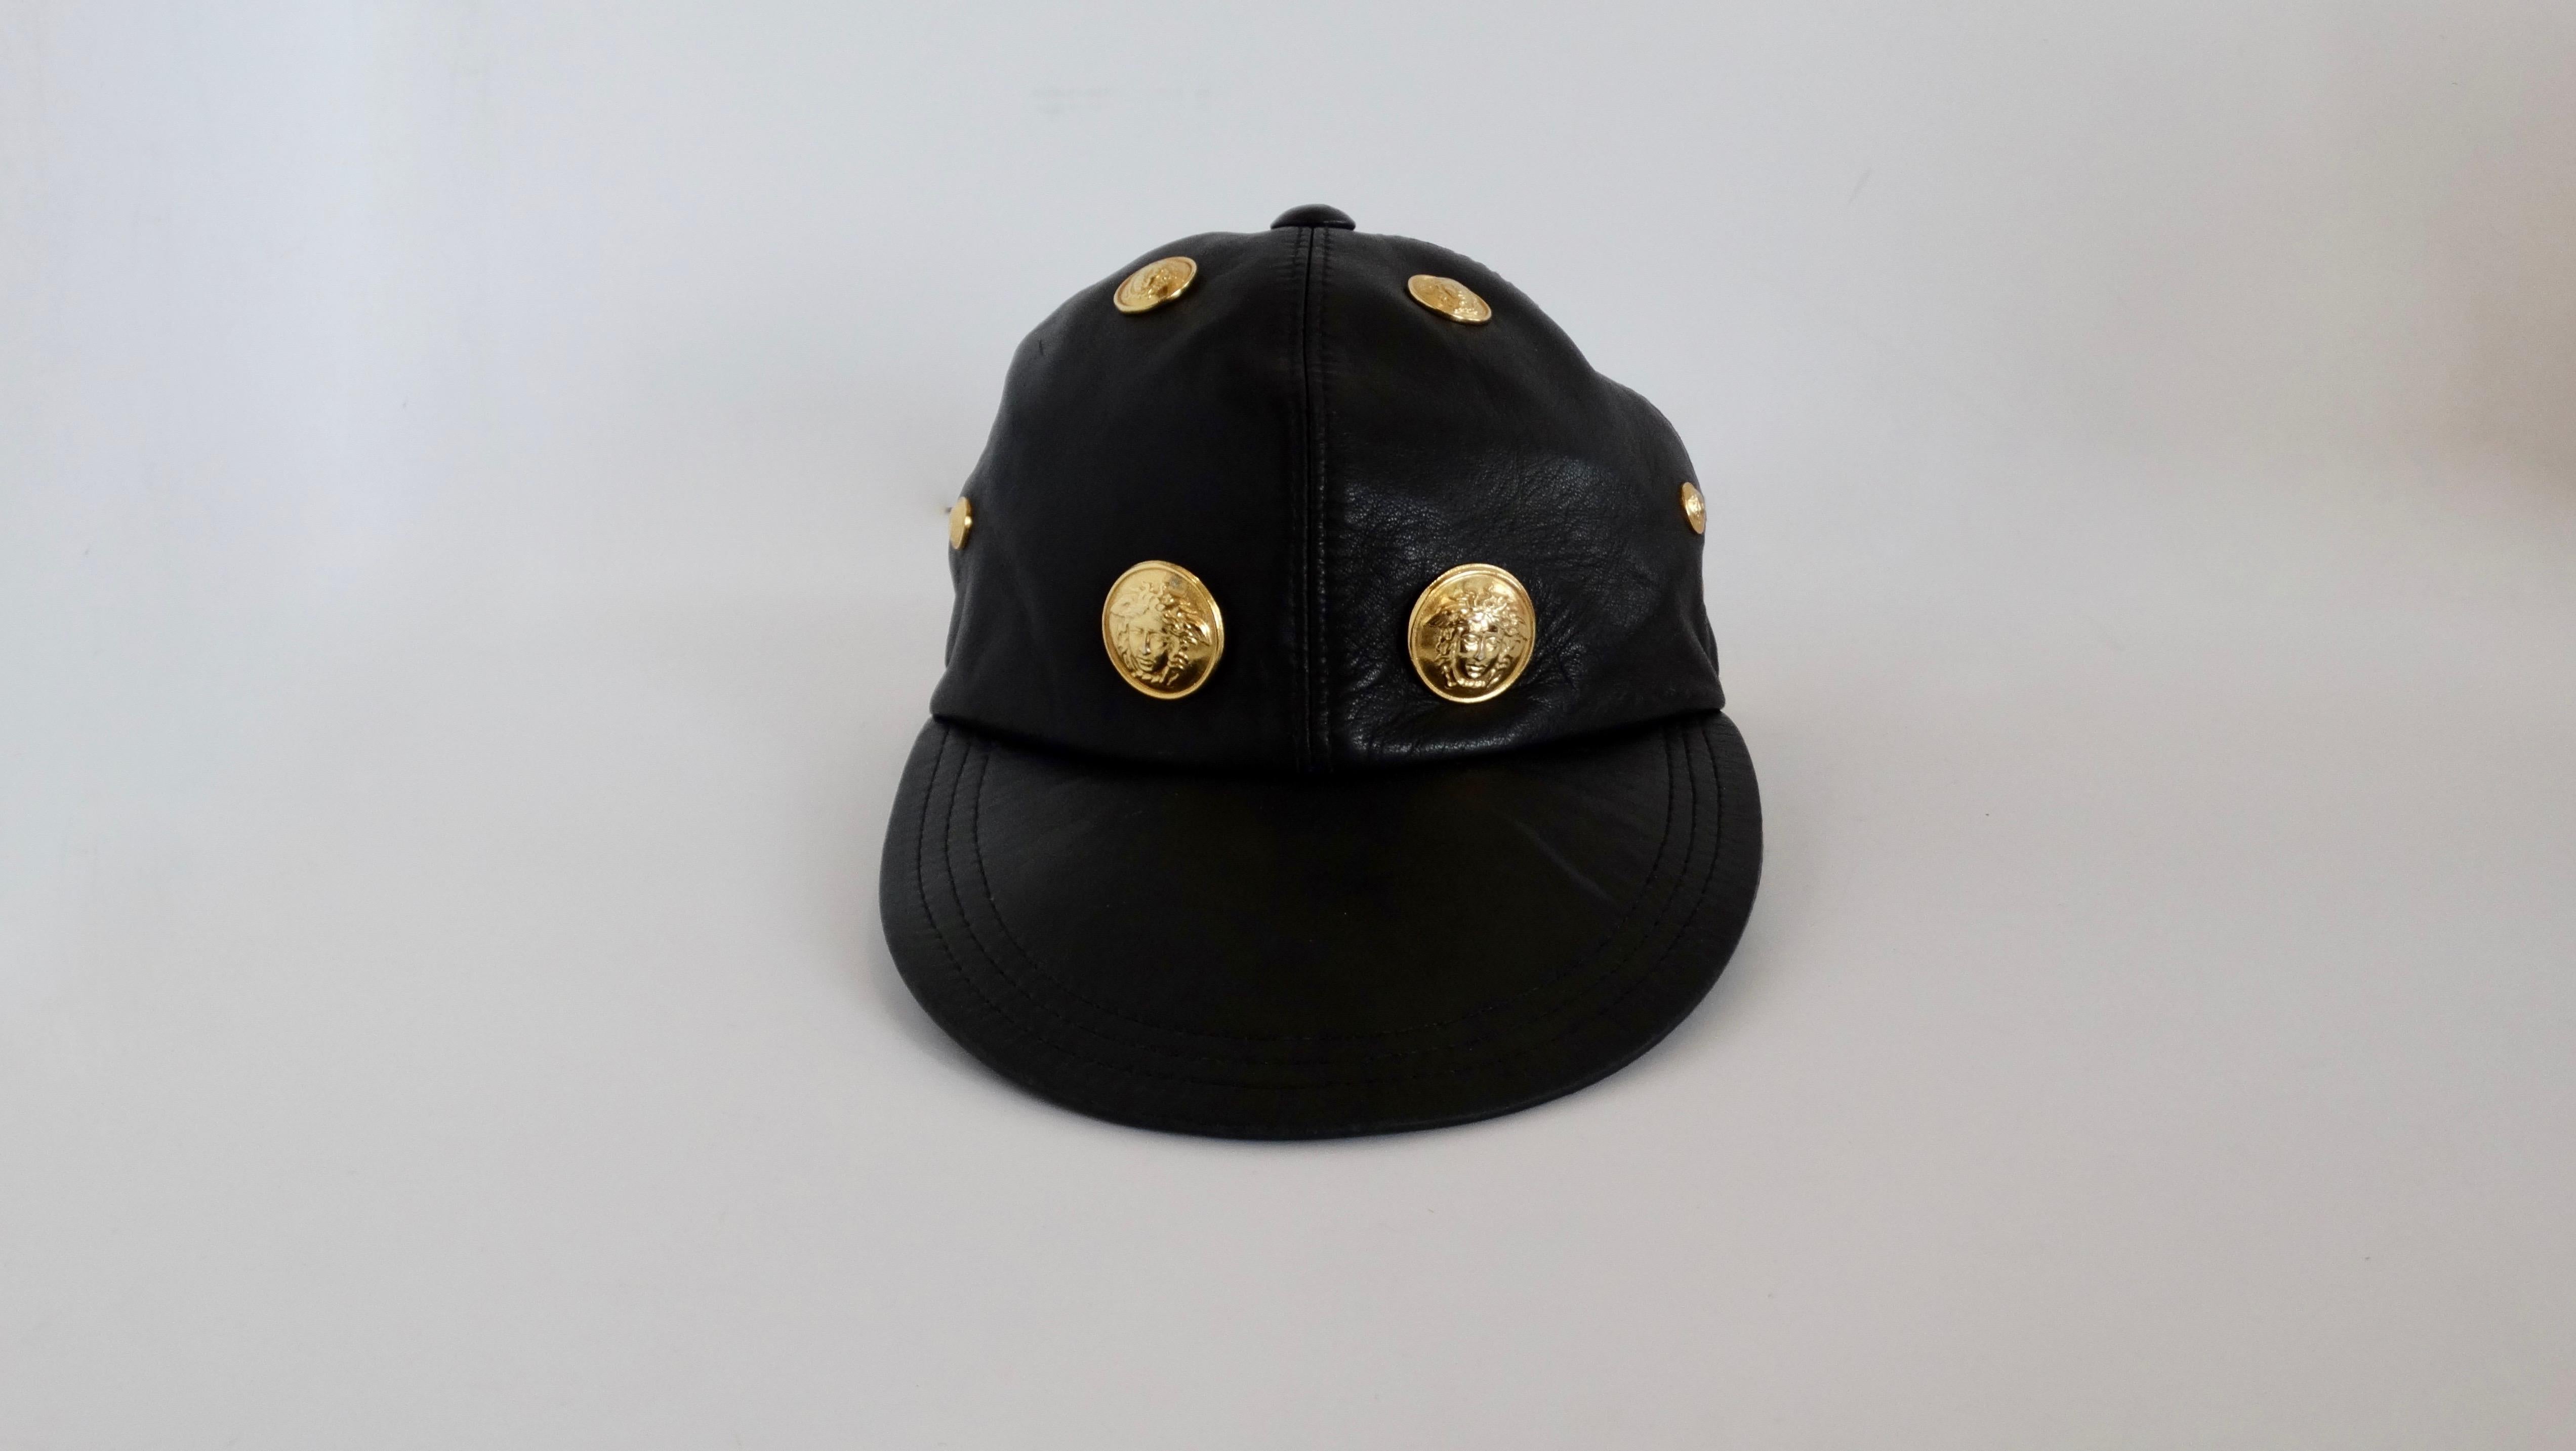 Ajoutez une touche de Versace des années 90 à votre look avec cet étonnant chapeau Gianni Versace ! Datant du début des années 1990, ce chapeau est fabriqué à partir de cuir noir ultra souple et présente une facture plate. La casquette est ornée de